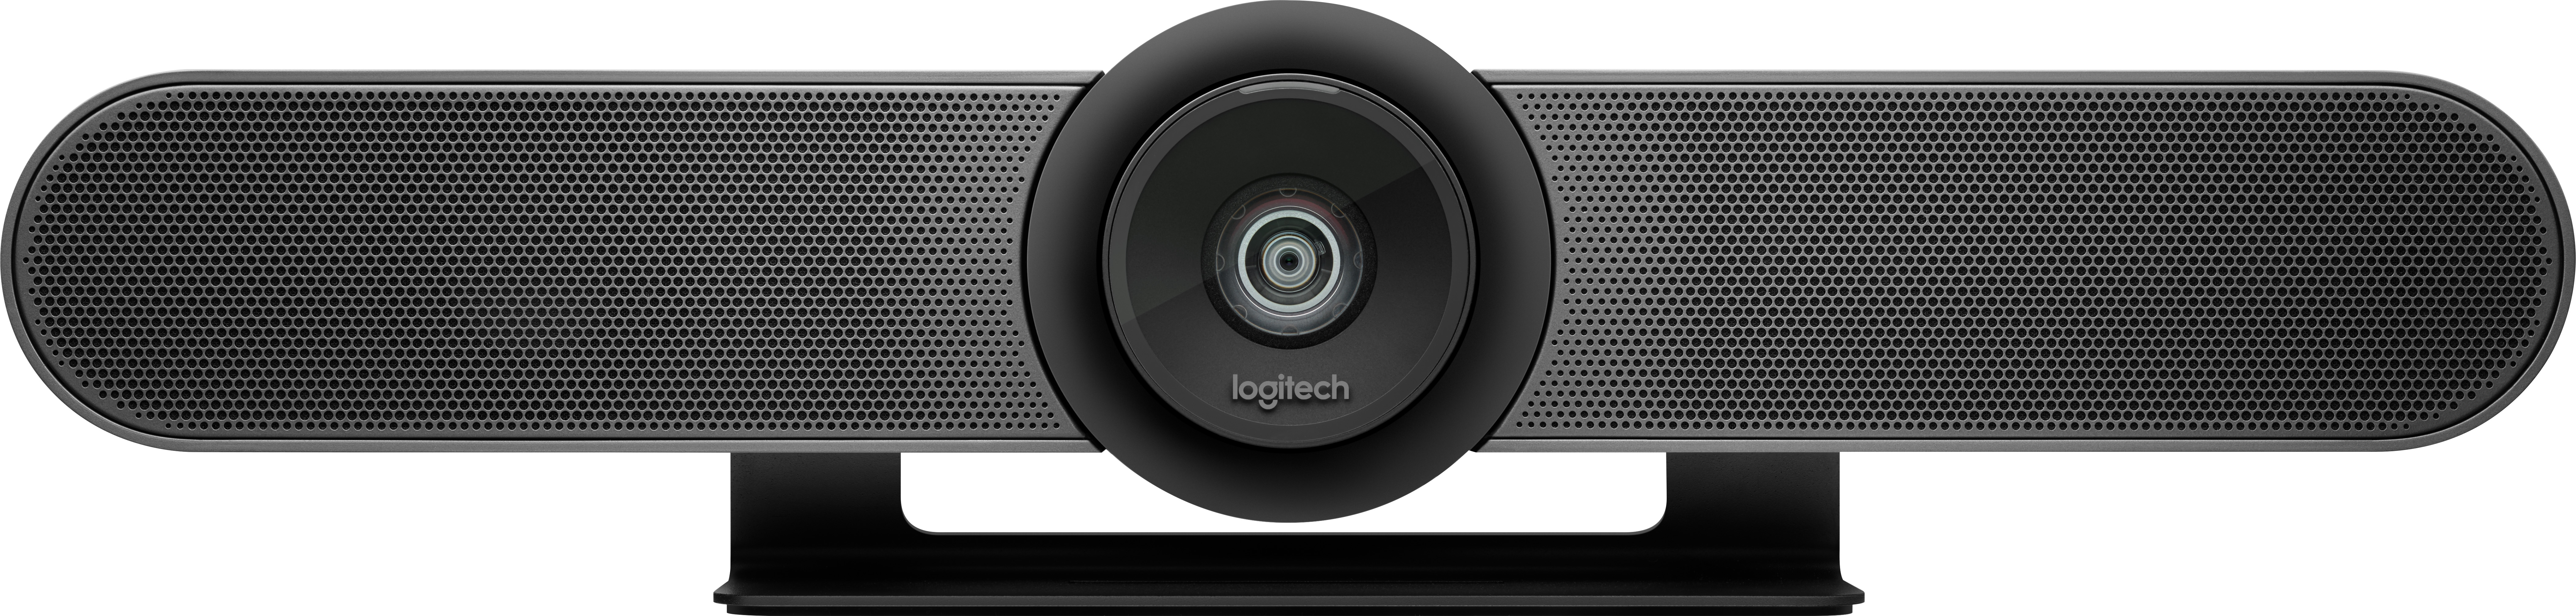 Logitech ConferenceCam MEETUP, 4K Ultra HD, schwarz 3840x2160, USB, Bluetooth, Fernbedienung